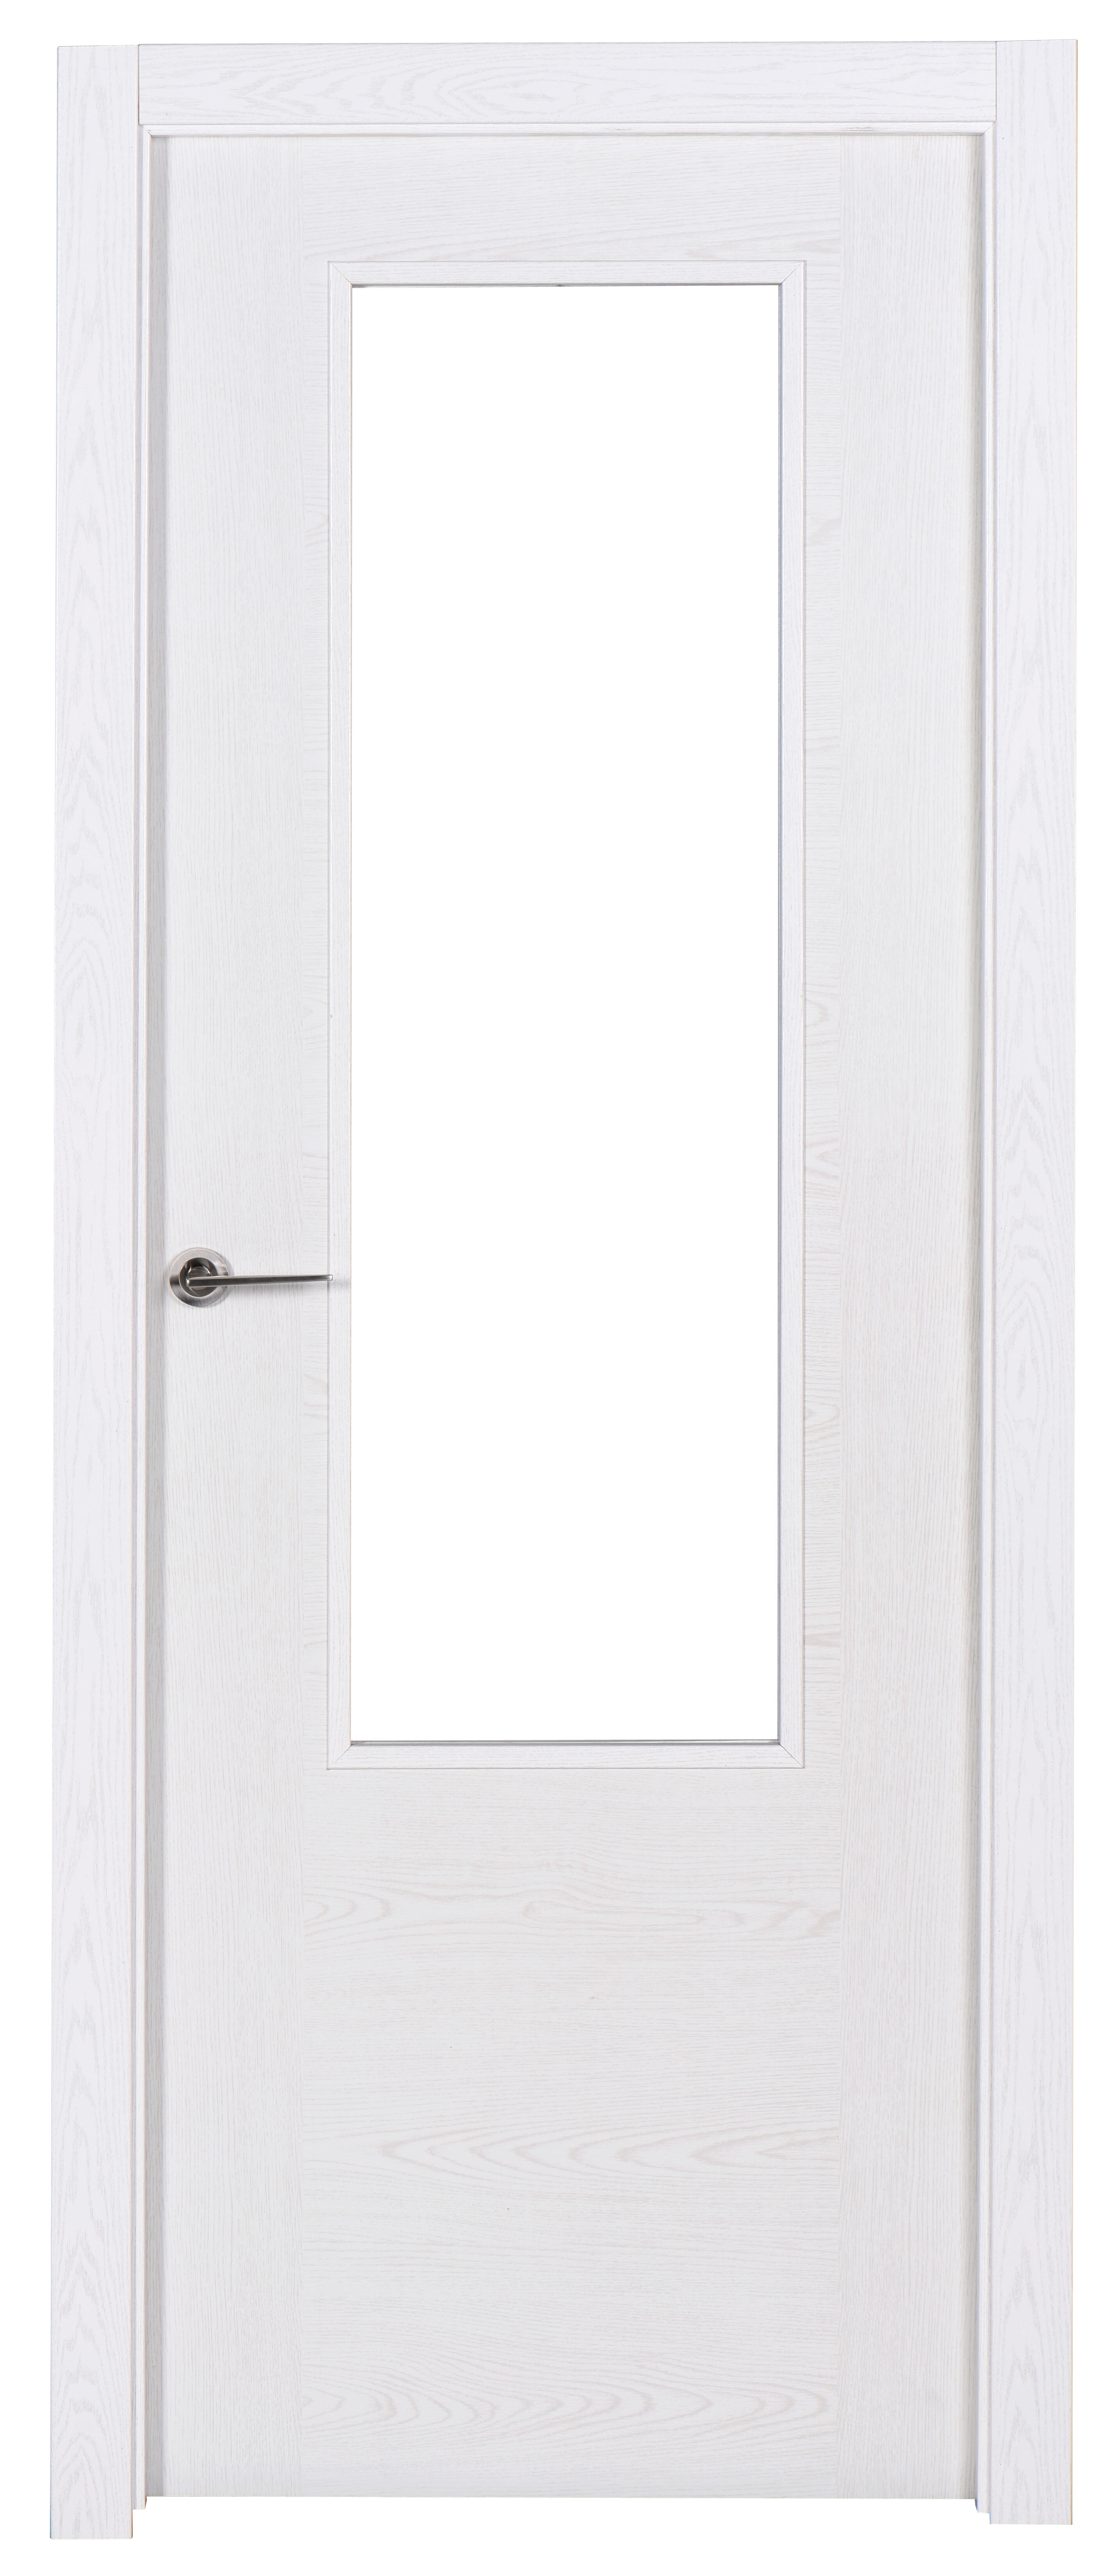 Puerta canarias blanco apertura derecha con cristal 82.5cm